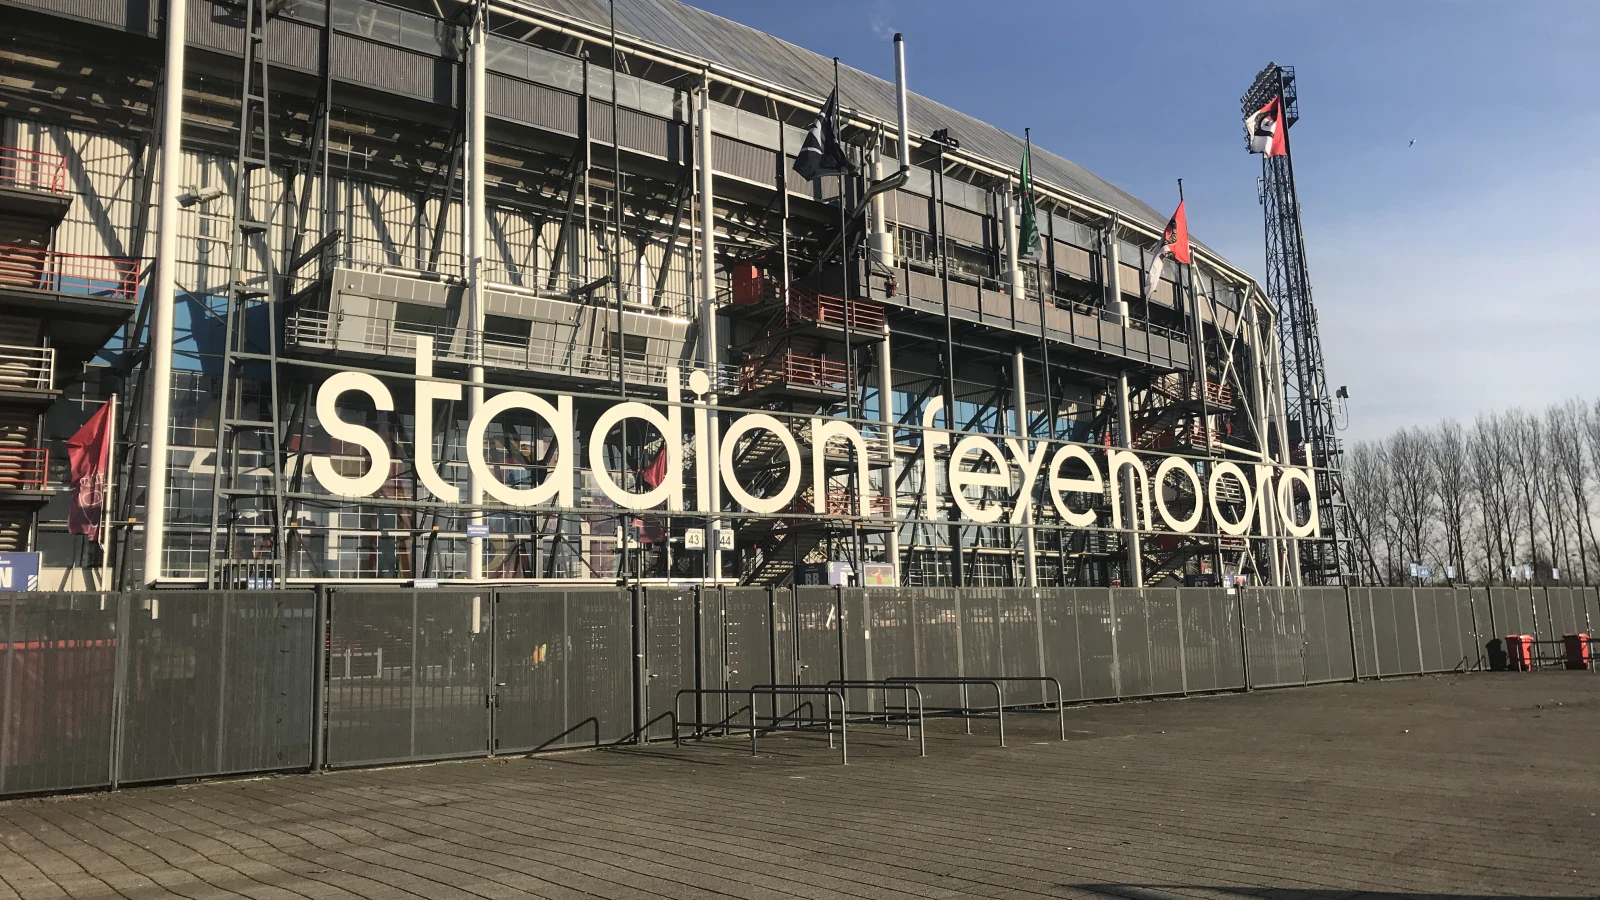 Eredivisieclubs akkoord over tv-gelden